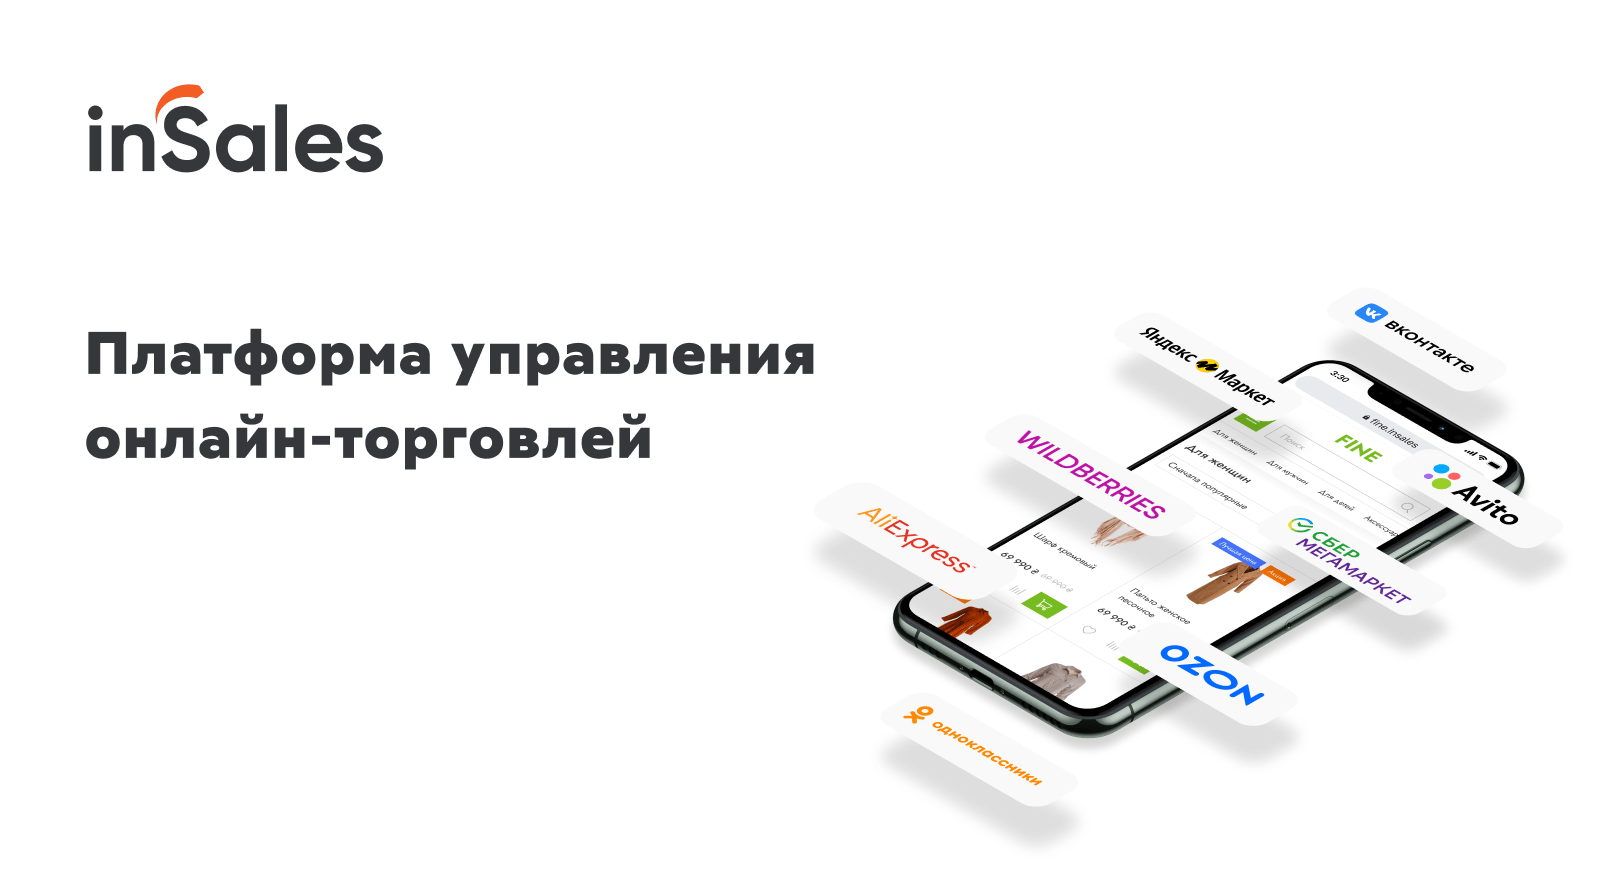 www.insales.ru